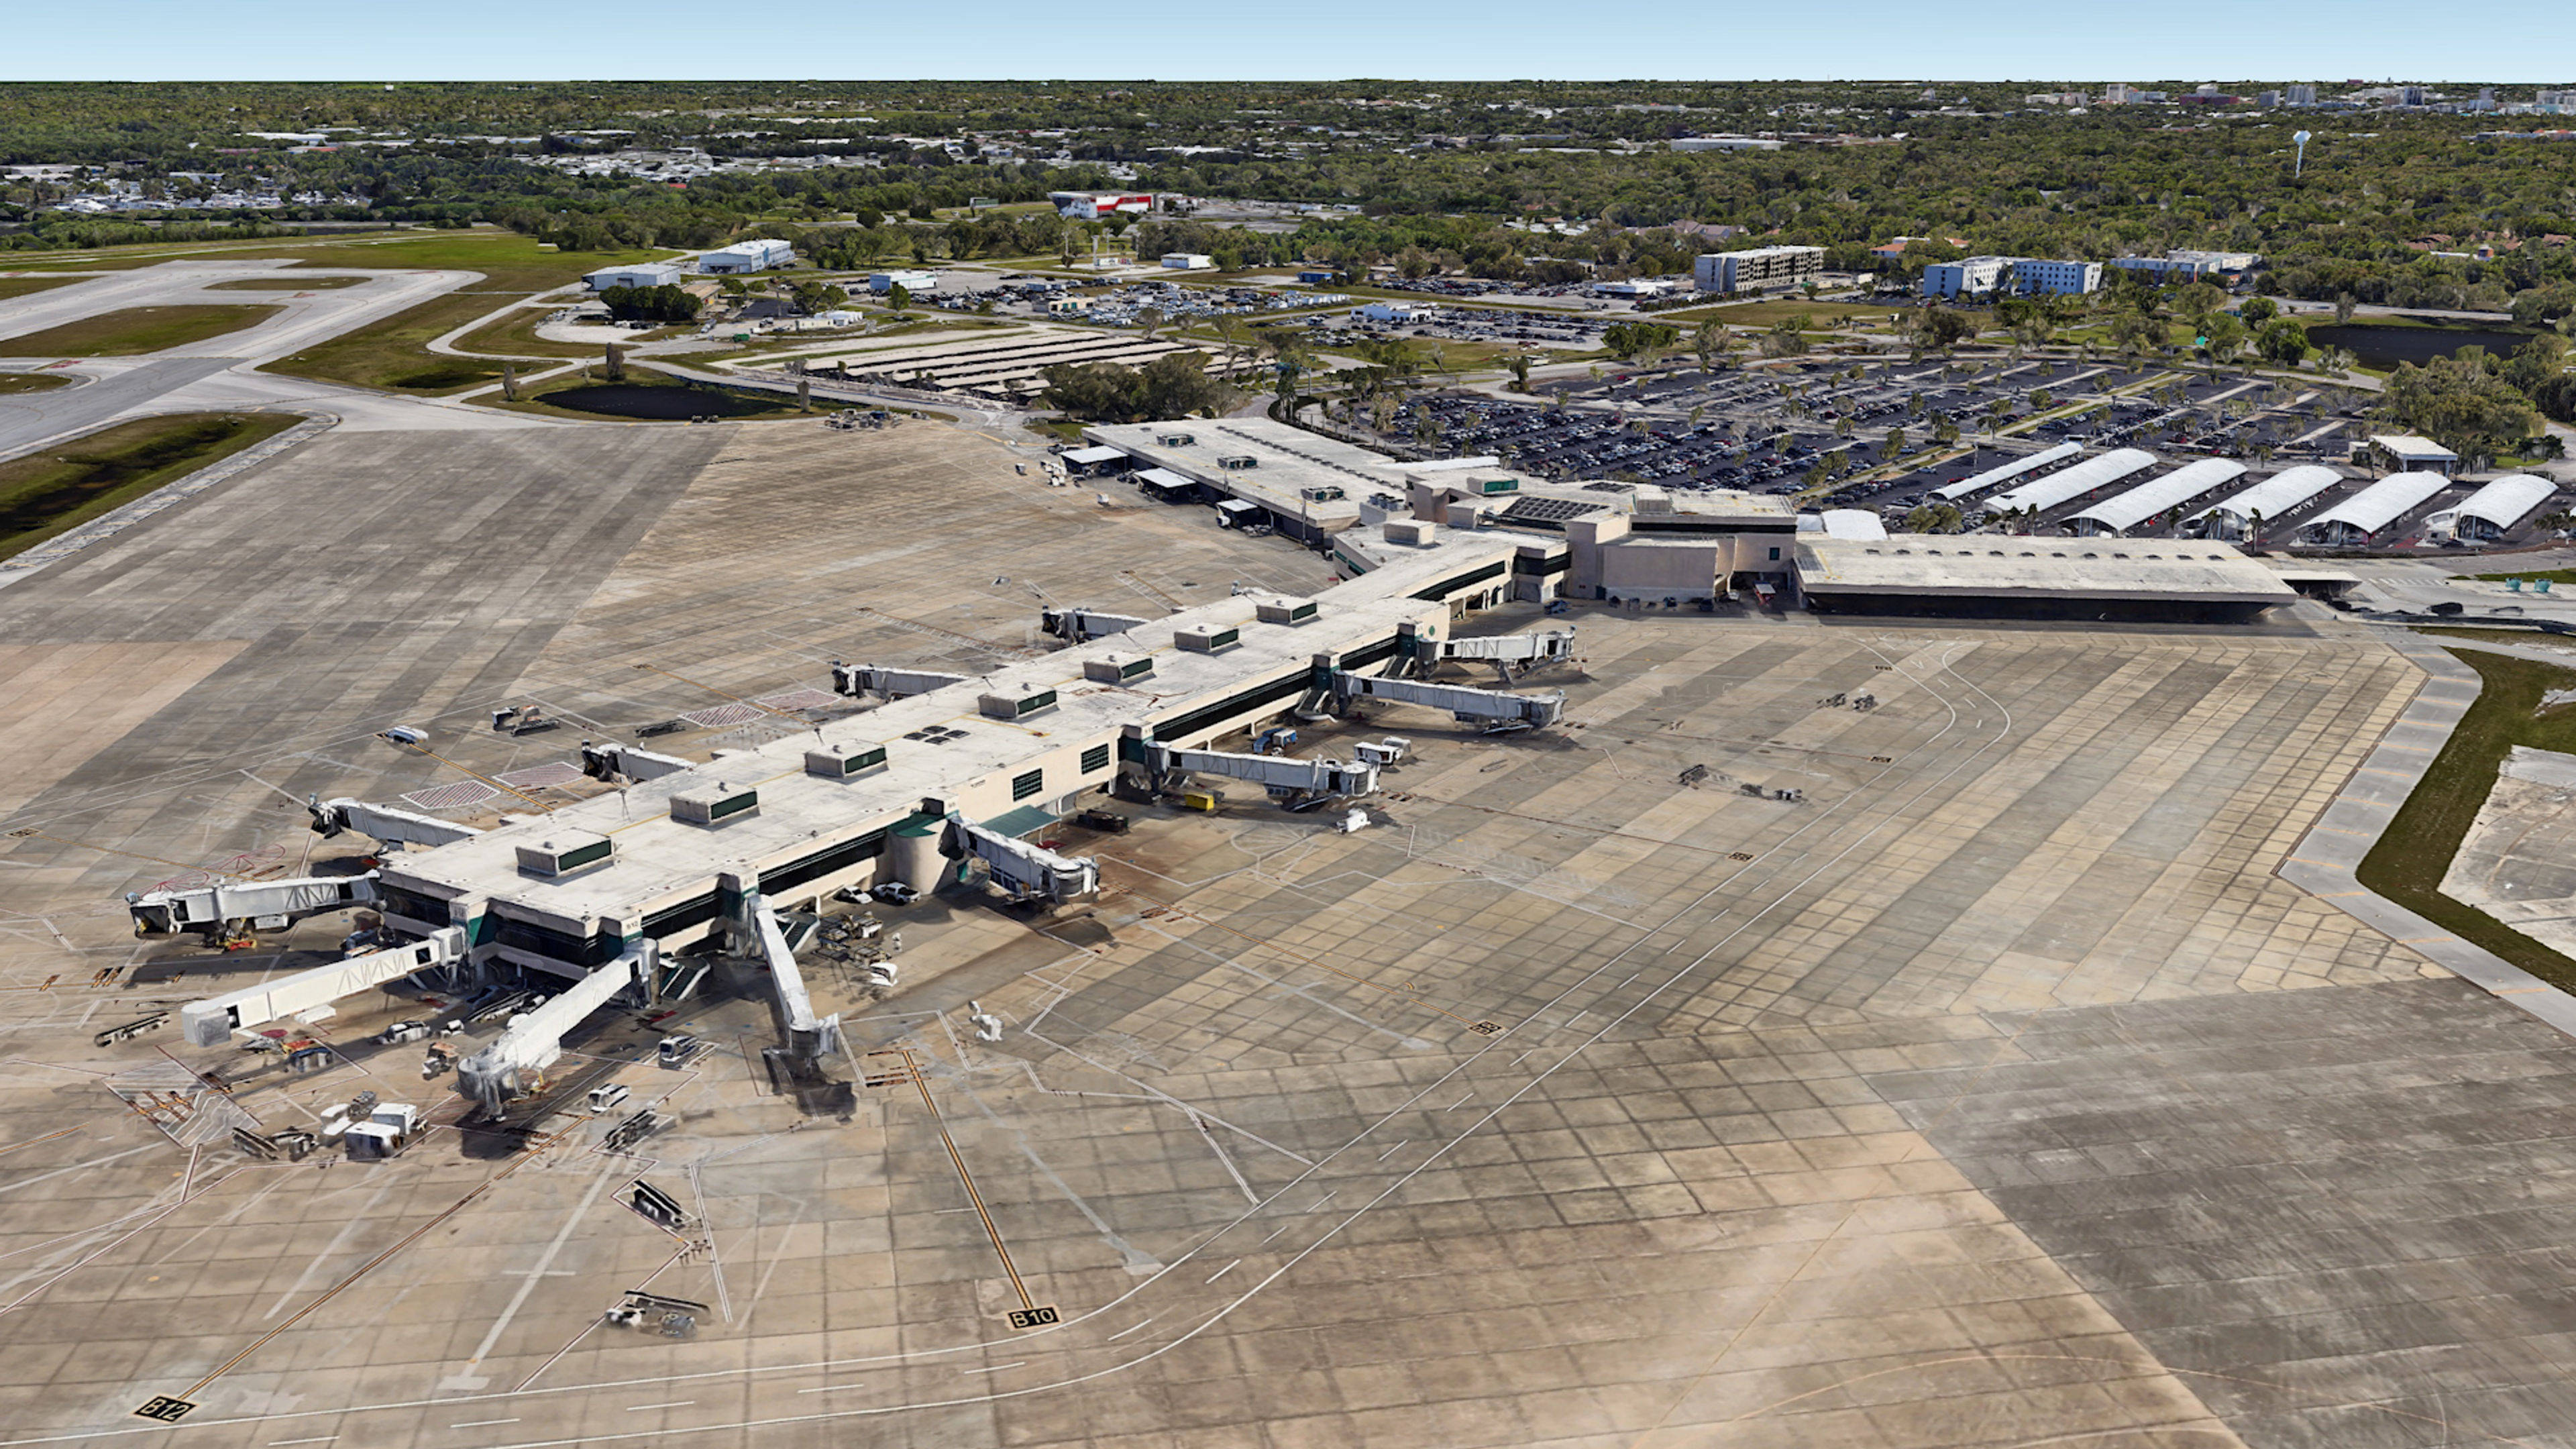 Aerial View of Sarasota Bradenton Airport